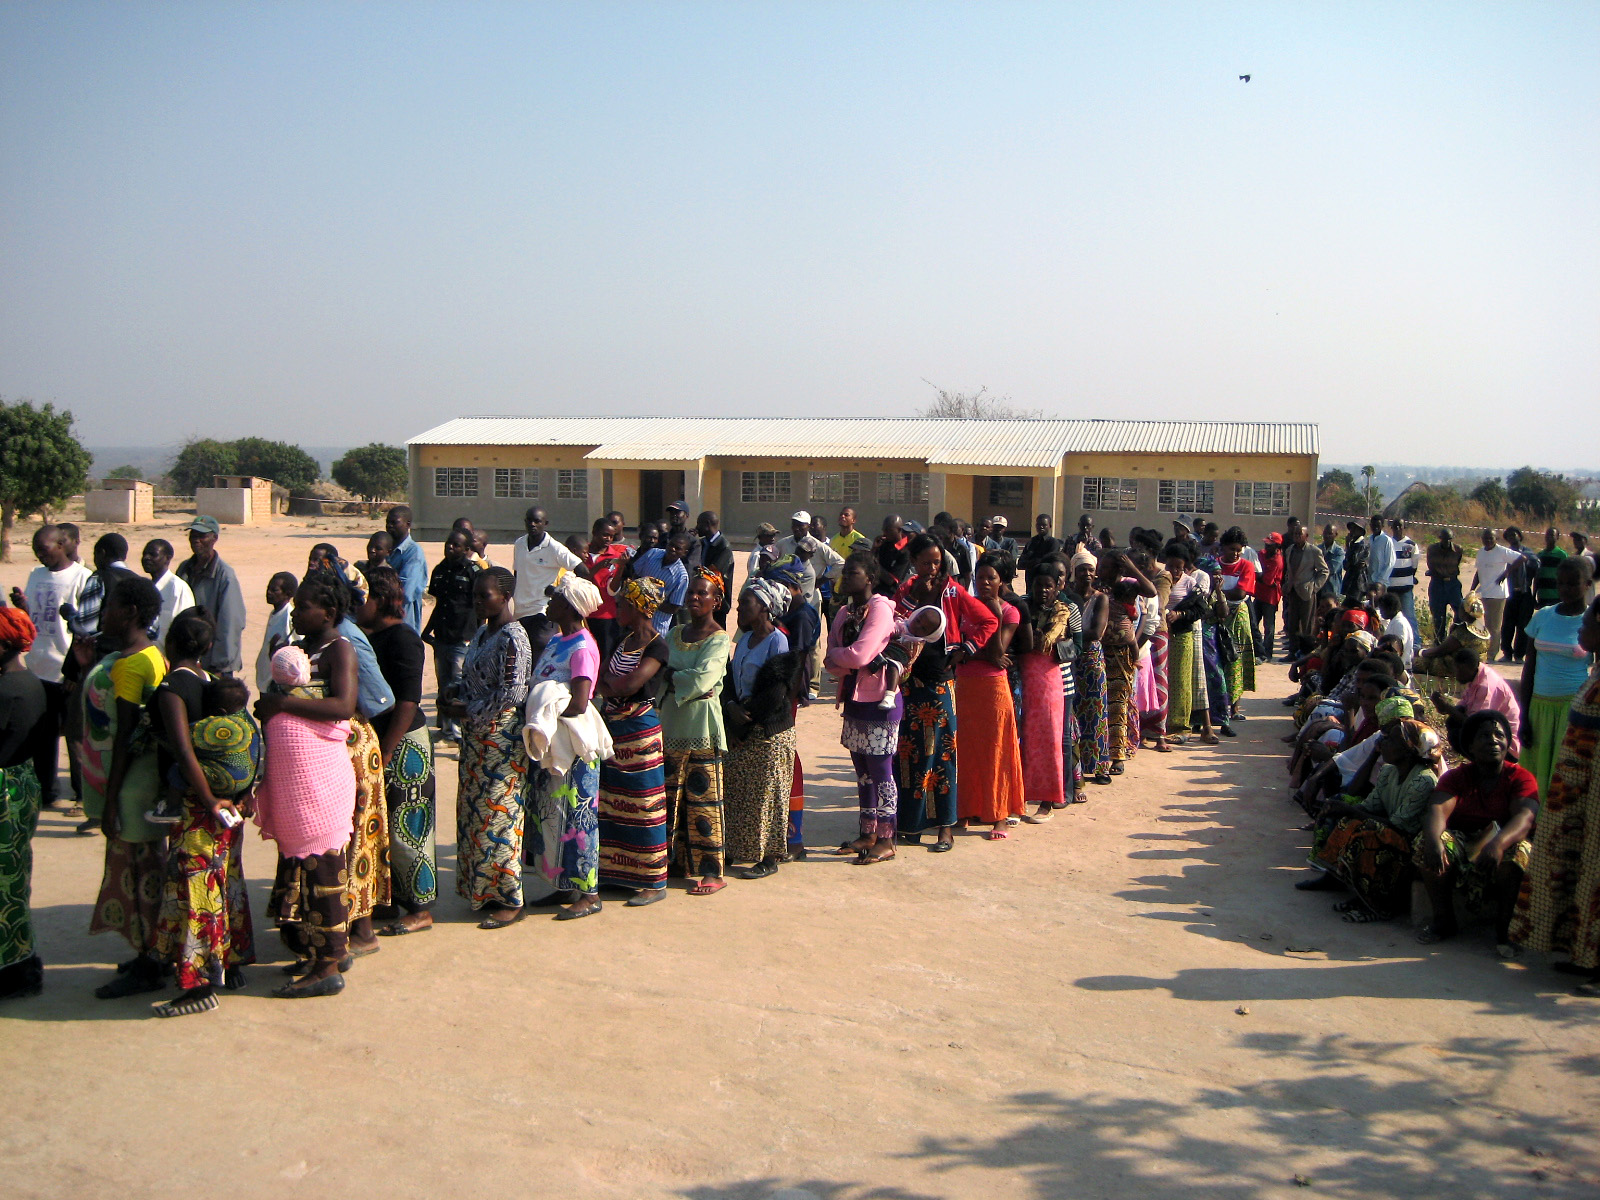 Wählerinnen und Wähler bei den Präsidentschaftswahlen 2011 in Sambia